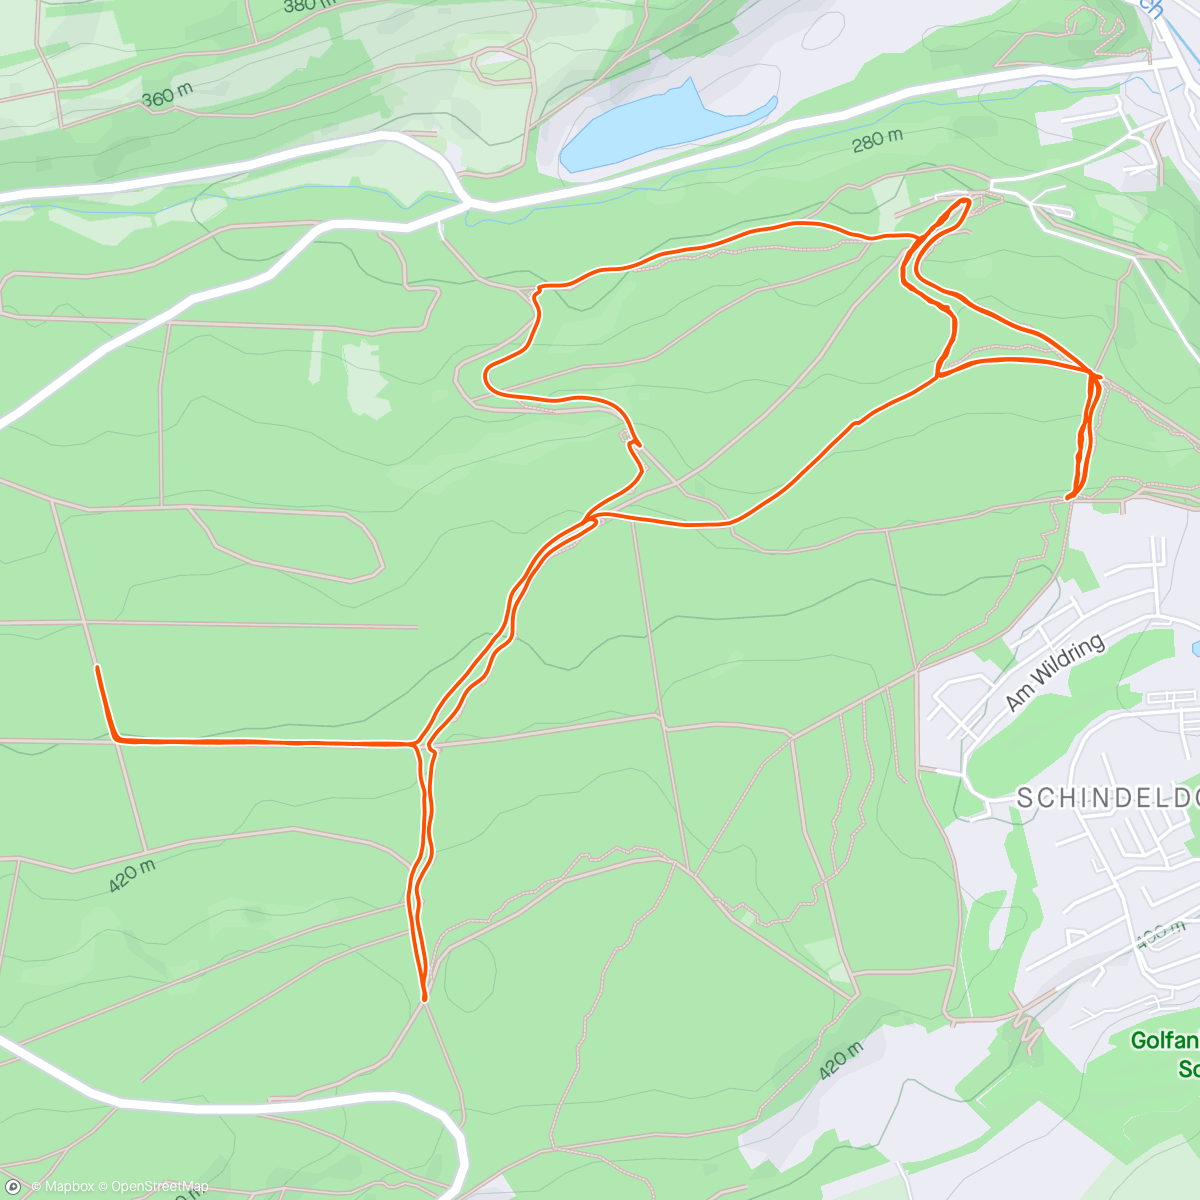 「Stromberg 2/3 🫣 #NEWBIKEDAY #MIDLIFECRISES」活動的地圖